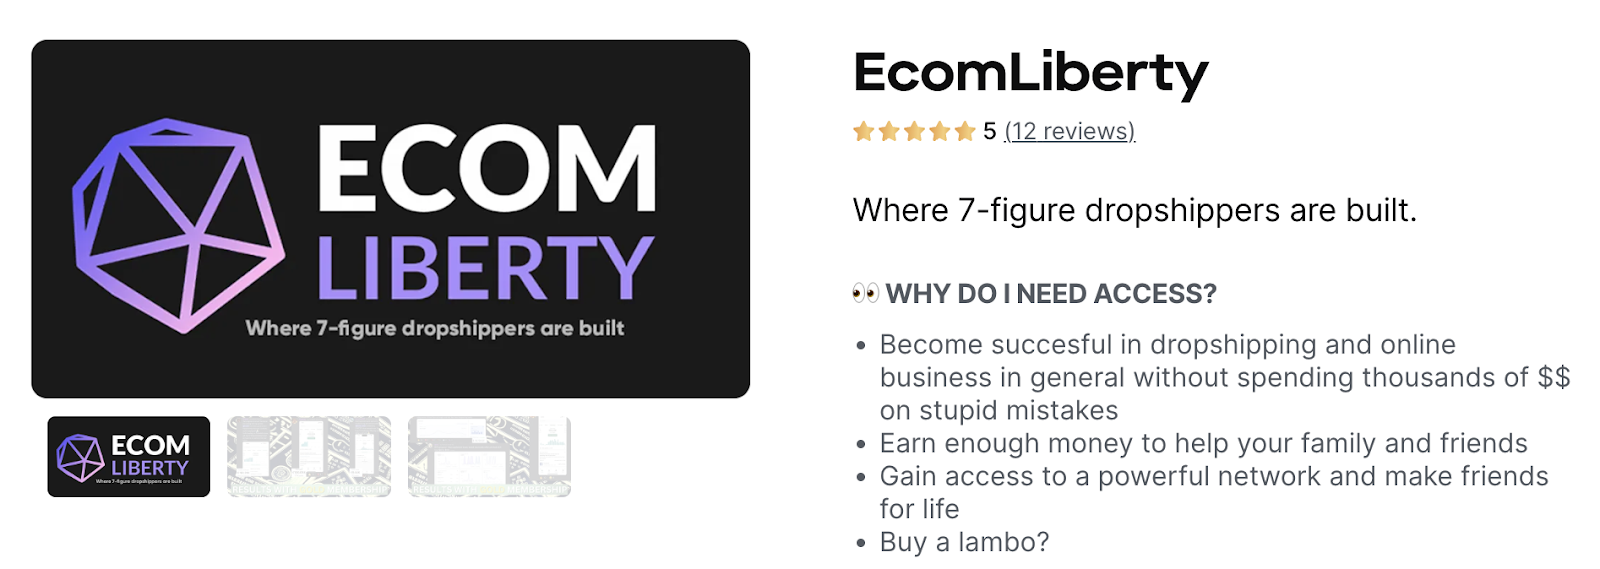 ecom liberty